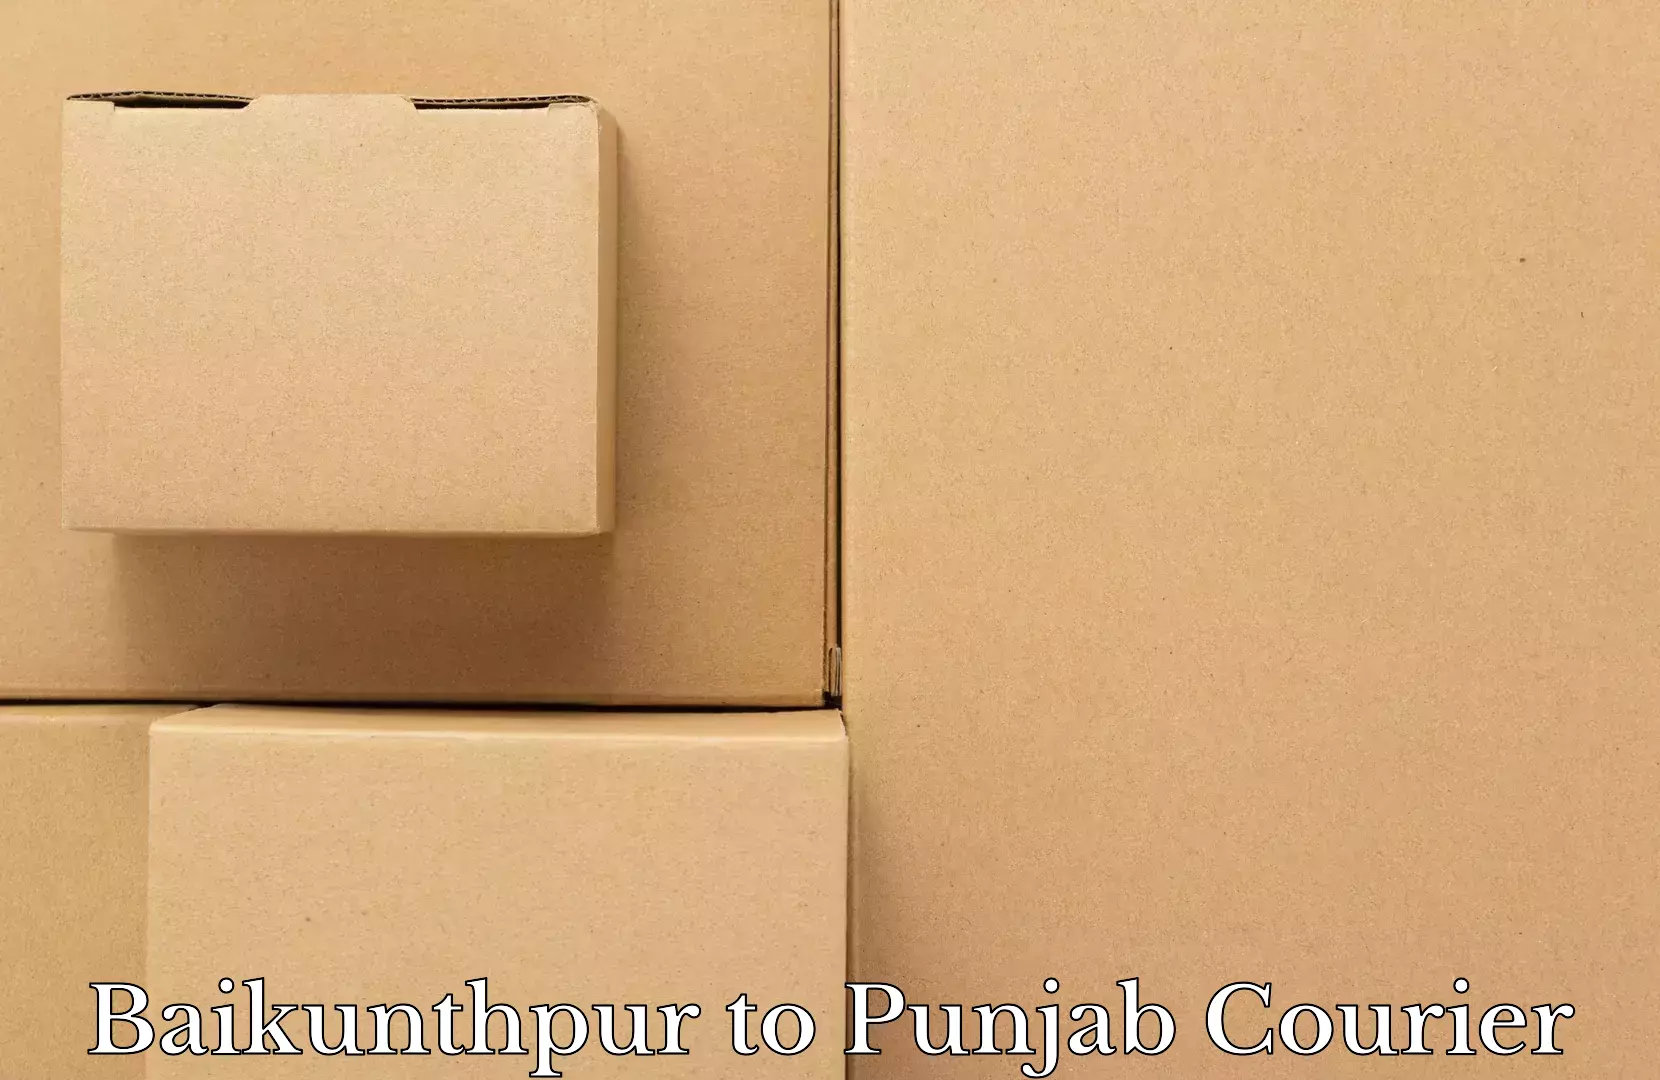 Luggage transport guidelines in Baikunthpur to Punjab